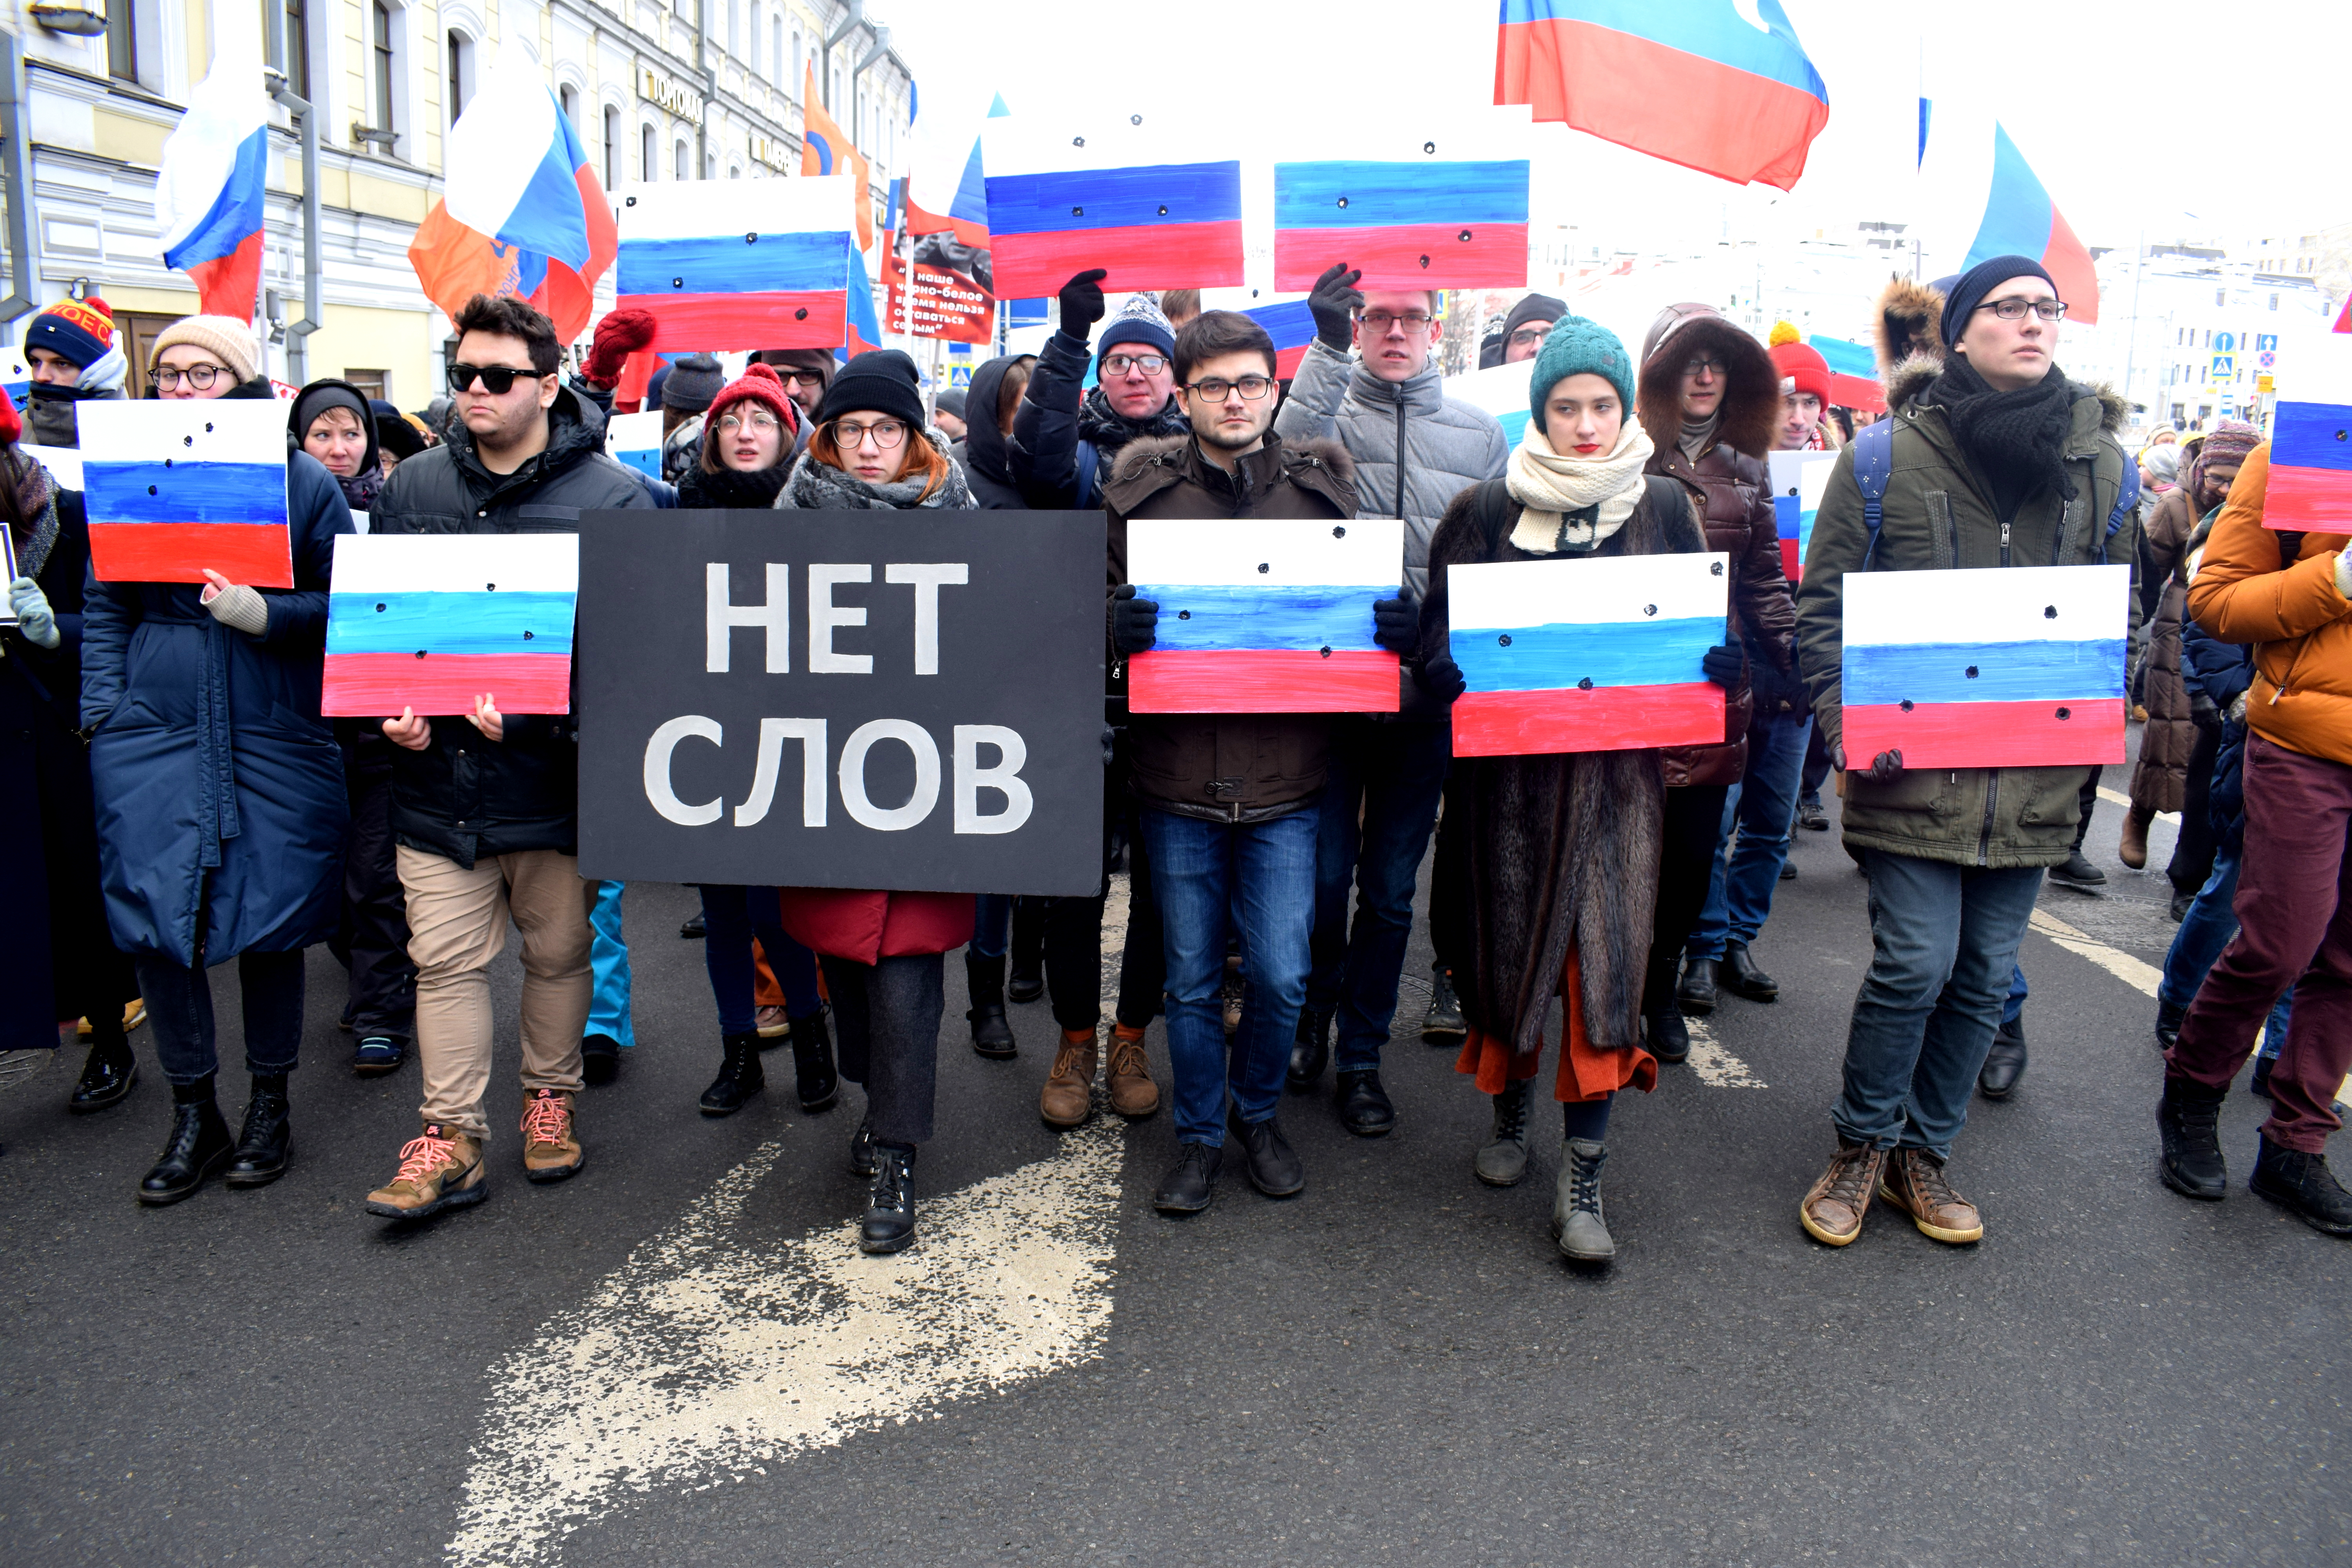 Boris Nemtsov March Moscow 2018 